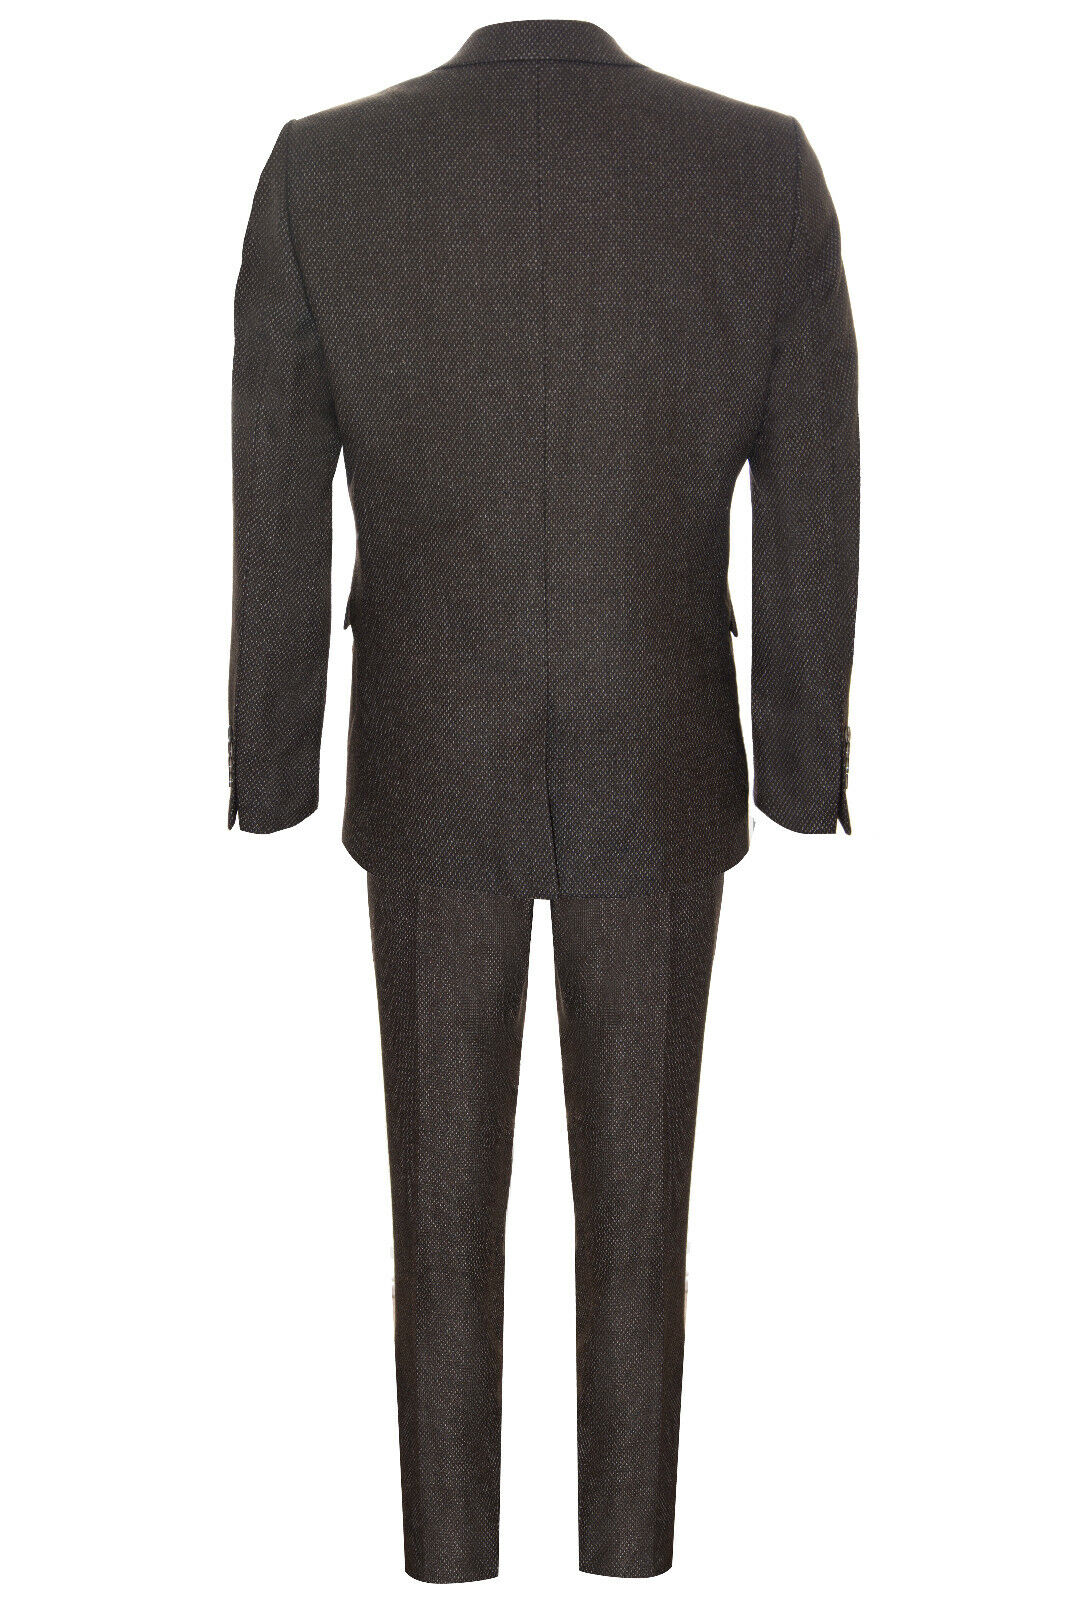 Pre-owned Truclothing Mens Brown Wool 3 Piece Suit Double Breasted Waistcoat Tweed Peaky Blinders 1920